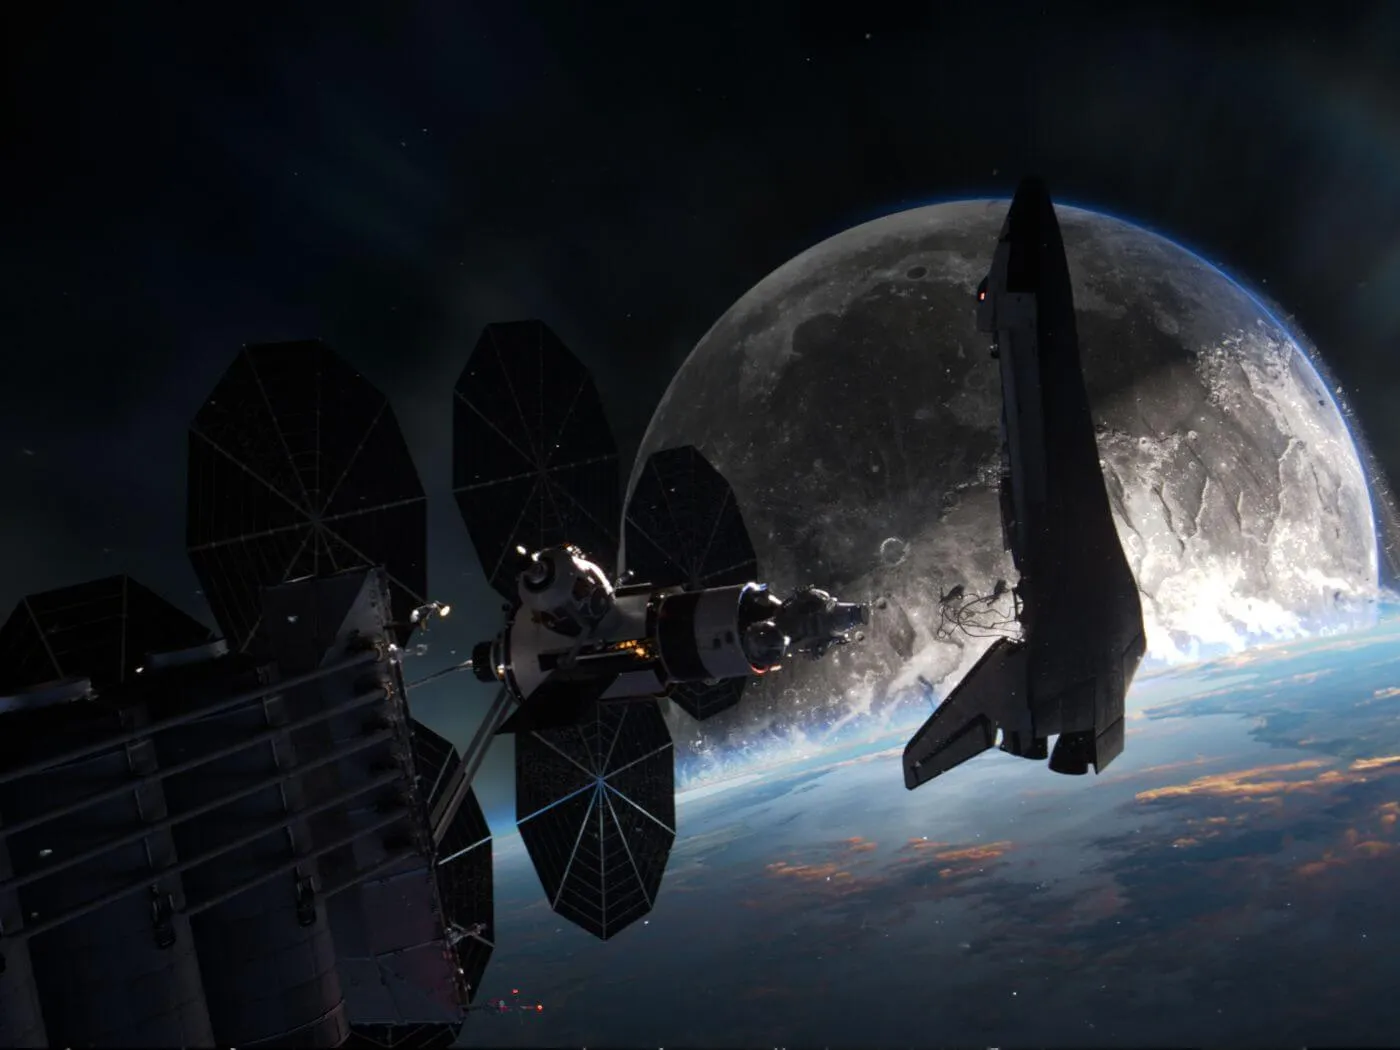 Review phim Trăng Rơi (Moonfall): Siêu phẩm khoa học viễn tưởng đáng tiền